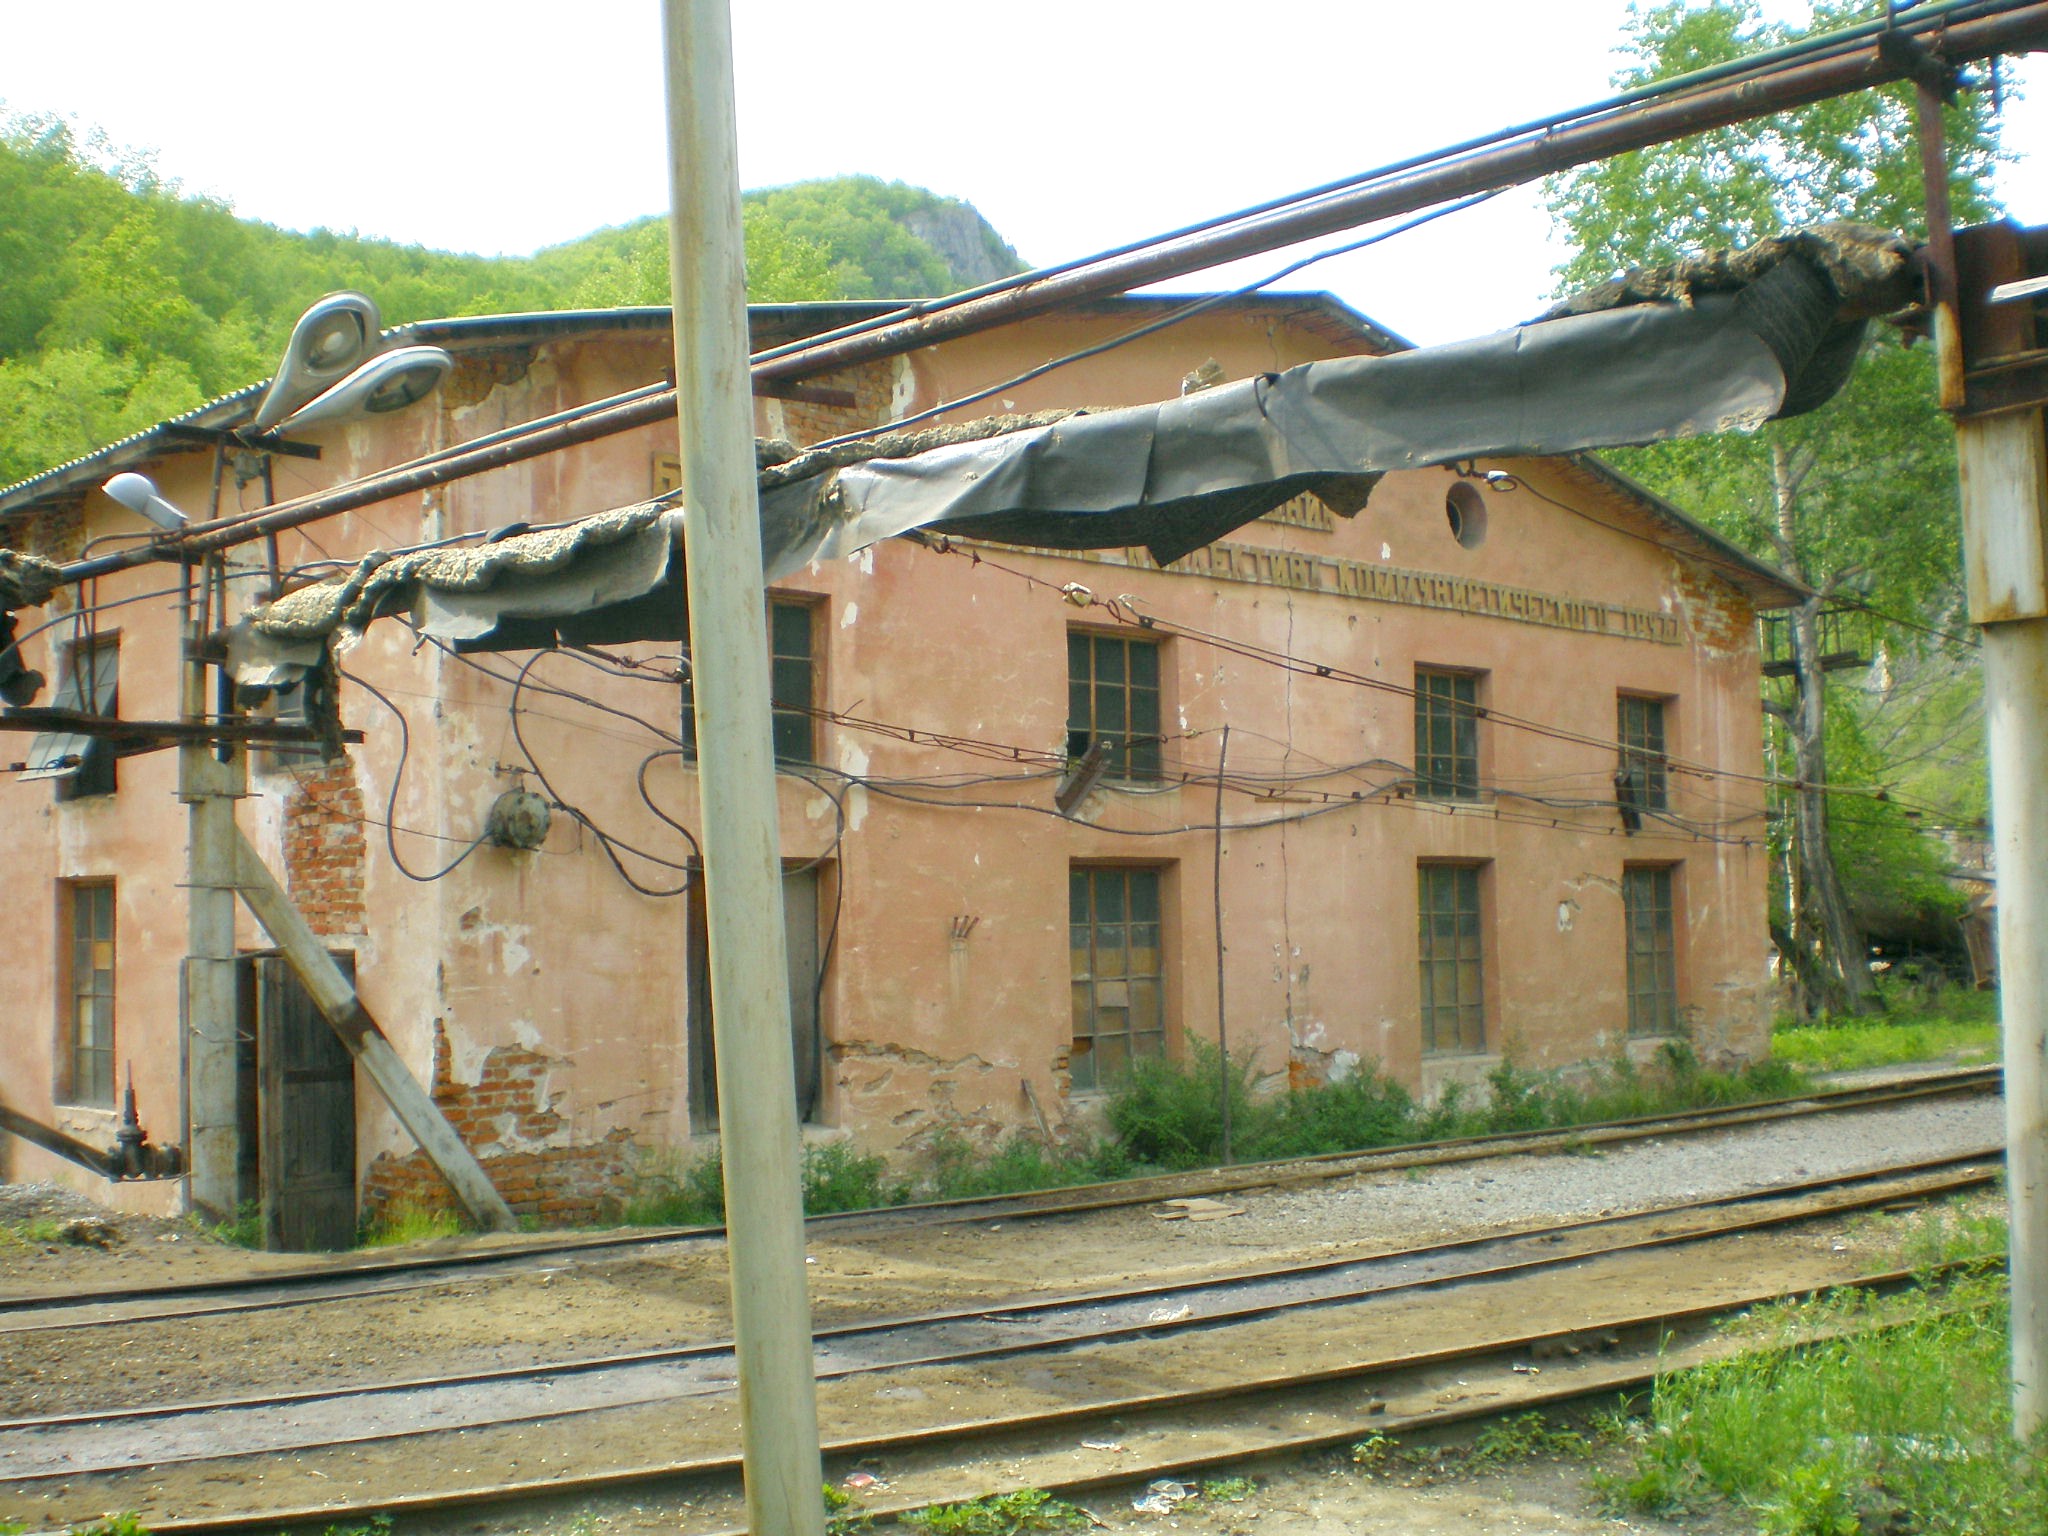 Тетюхинская узкоколейная железная дорога  —  фотографии, сделанные в 2008 году (часть 6)